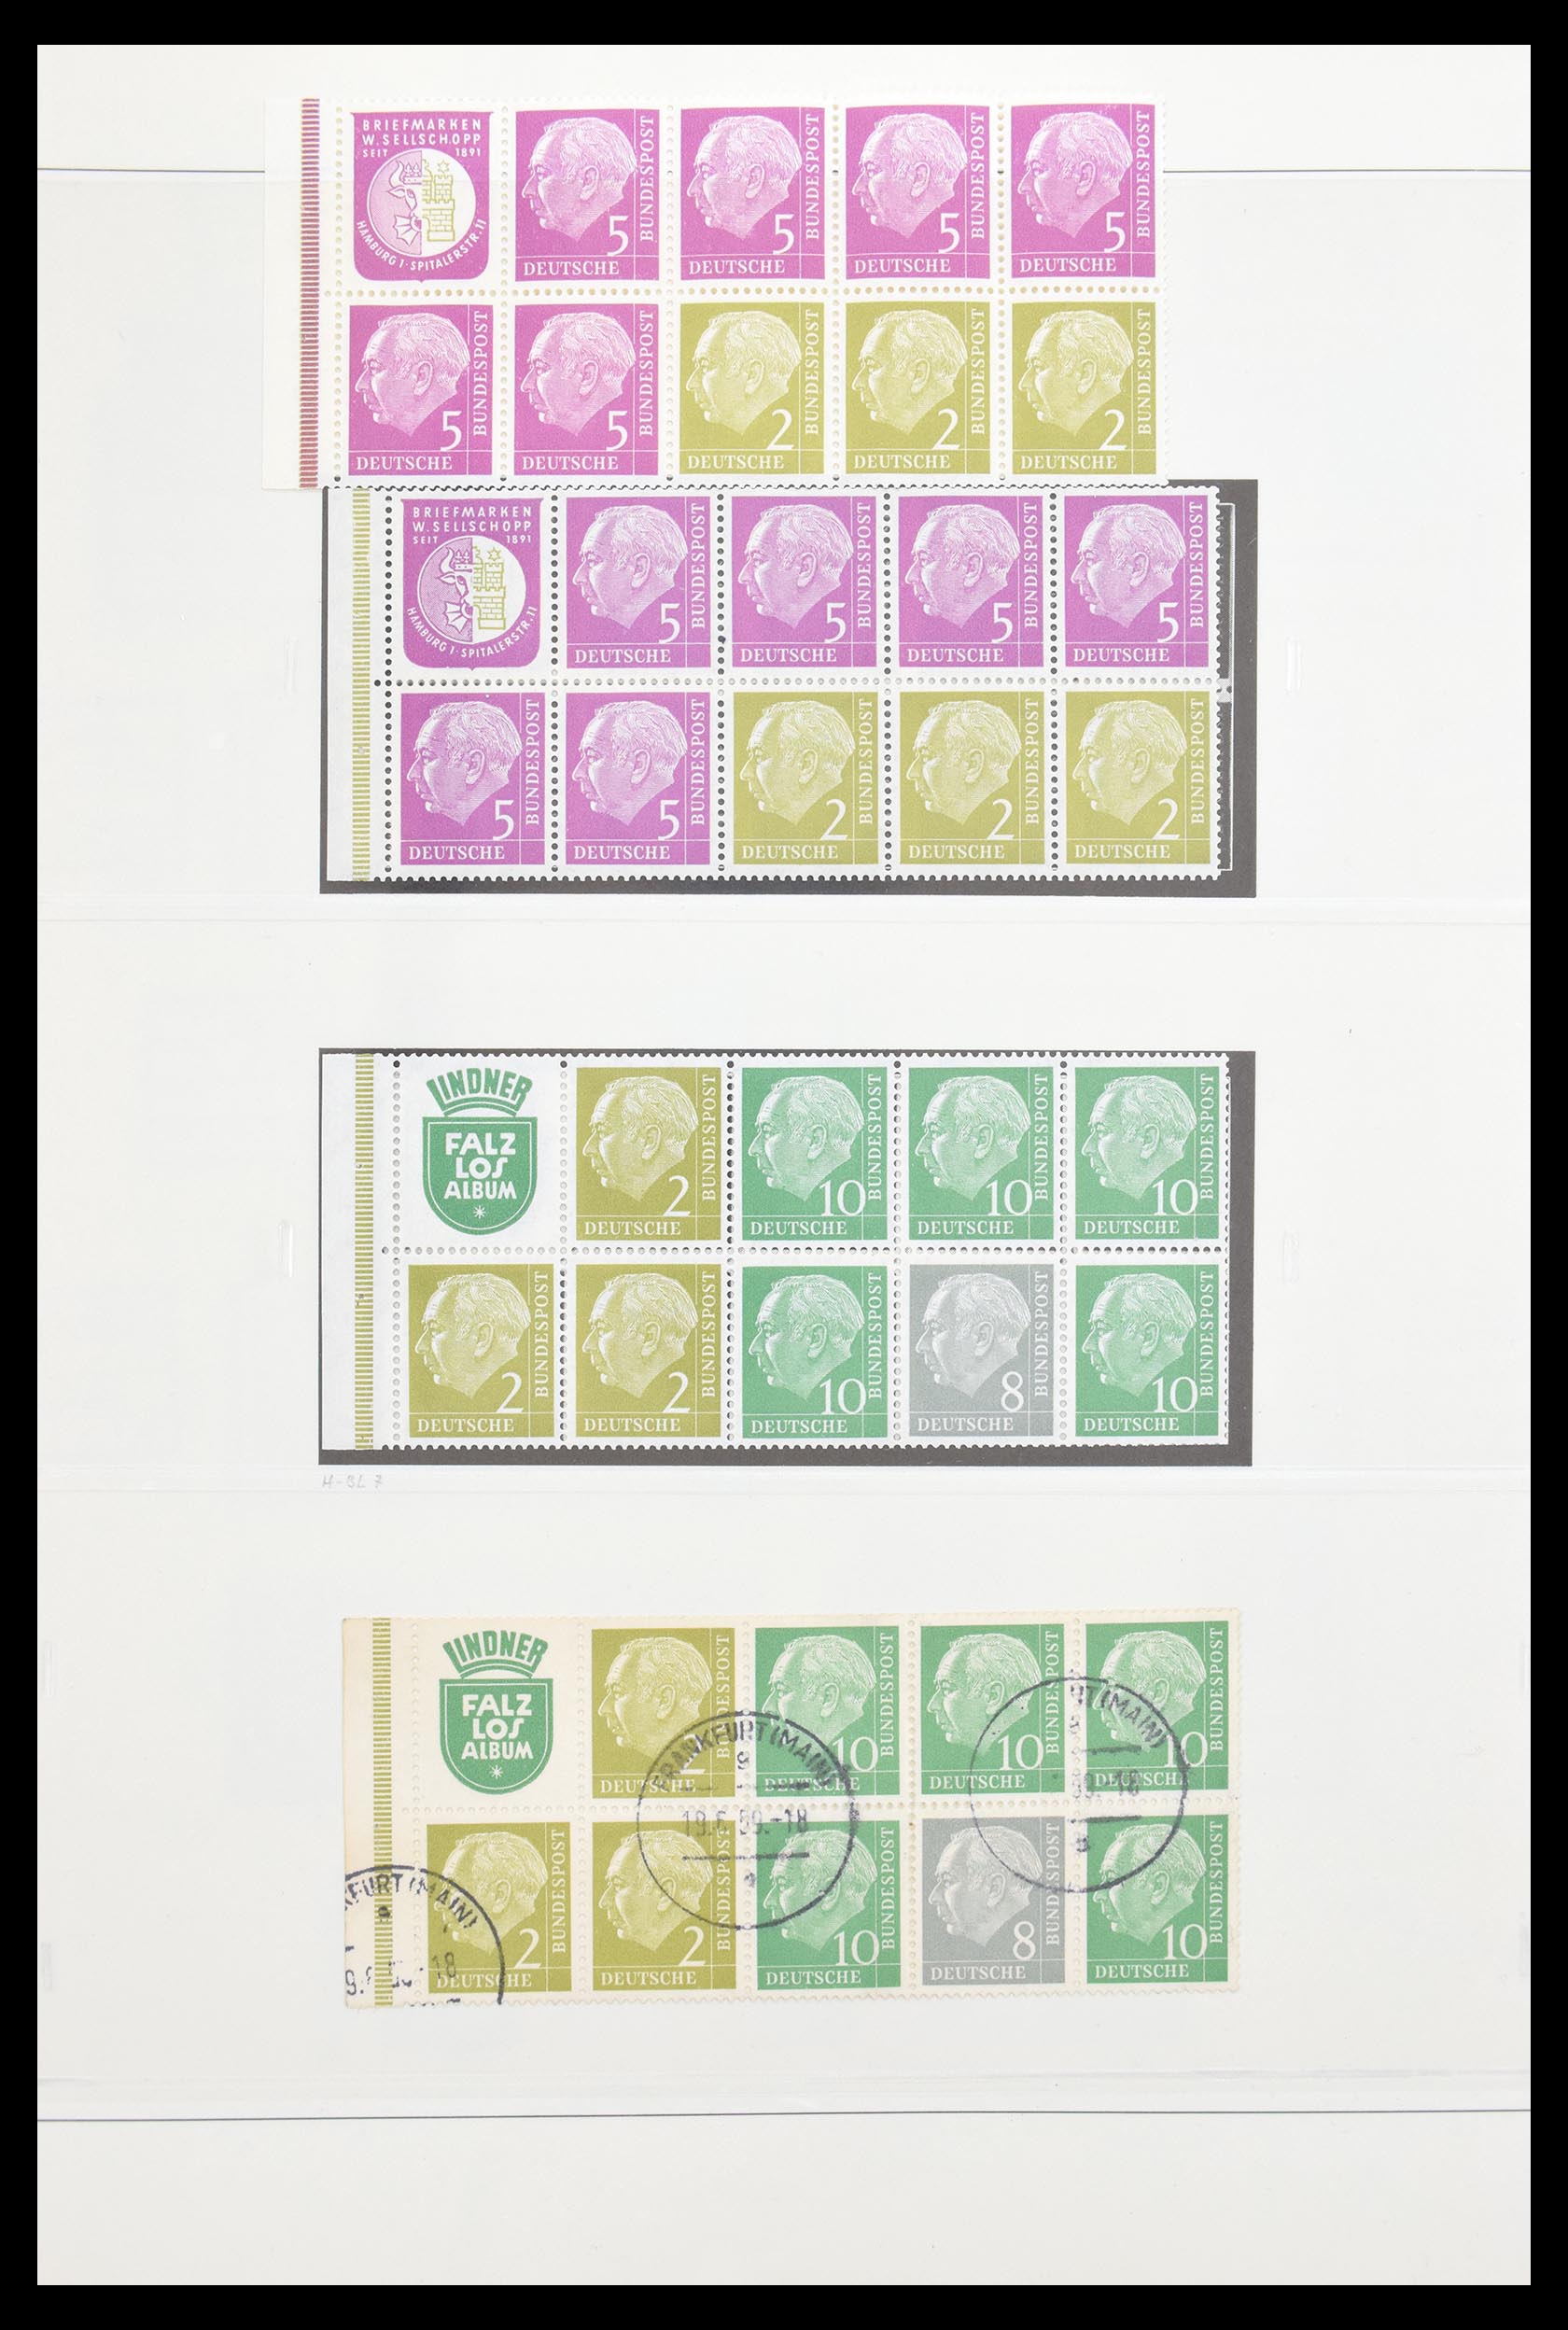 30605 009 - 30605 Bundespost combinations 1951-1974.